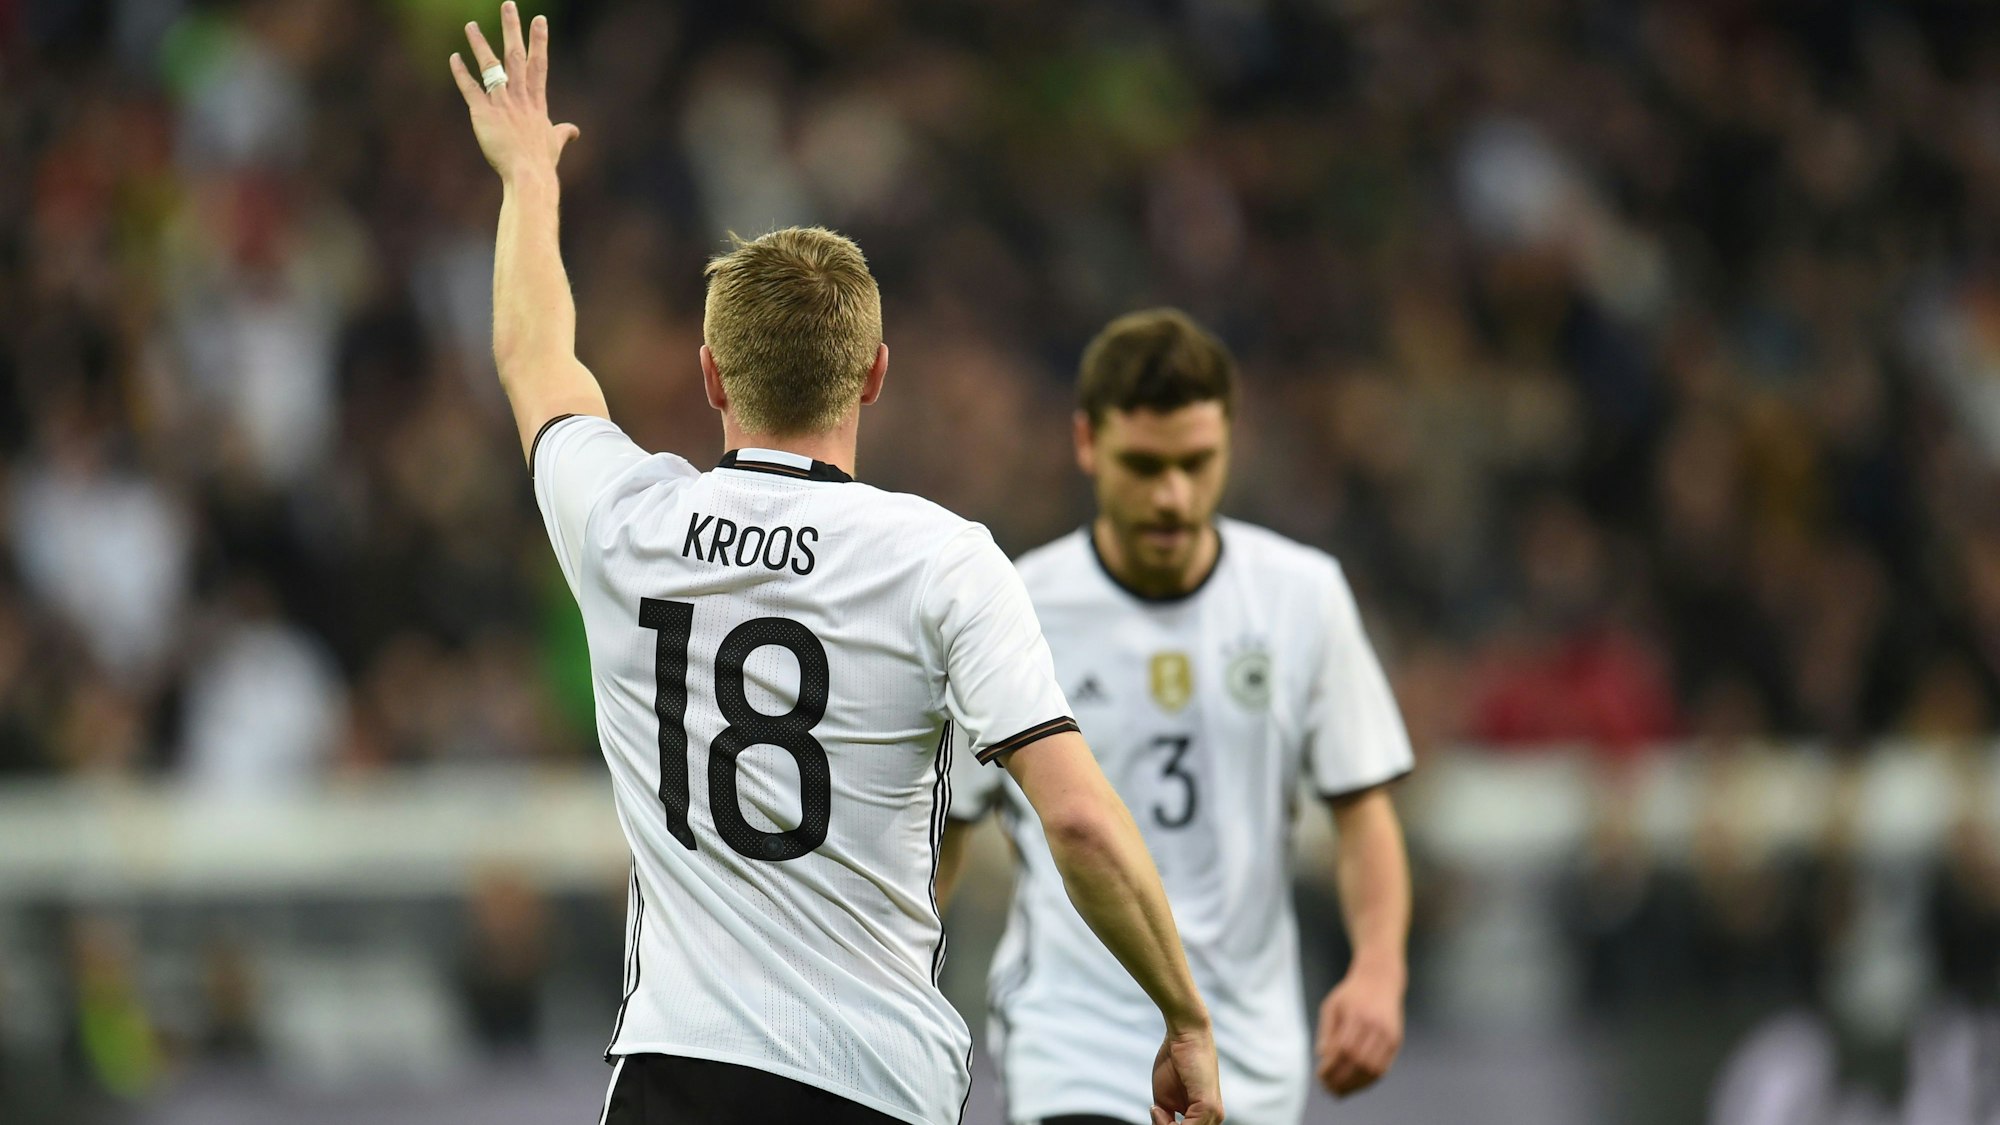 Einstige Teamkollegen: Toni Kroos und Jonas Hector standen gemeinsam für die deutsche Nationalmannschaft auf dem Platz. (Archivbild)